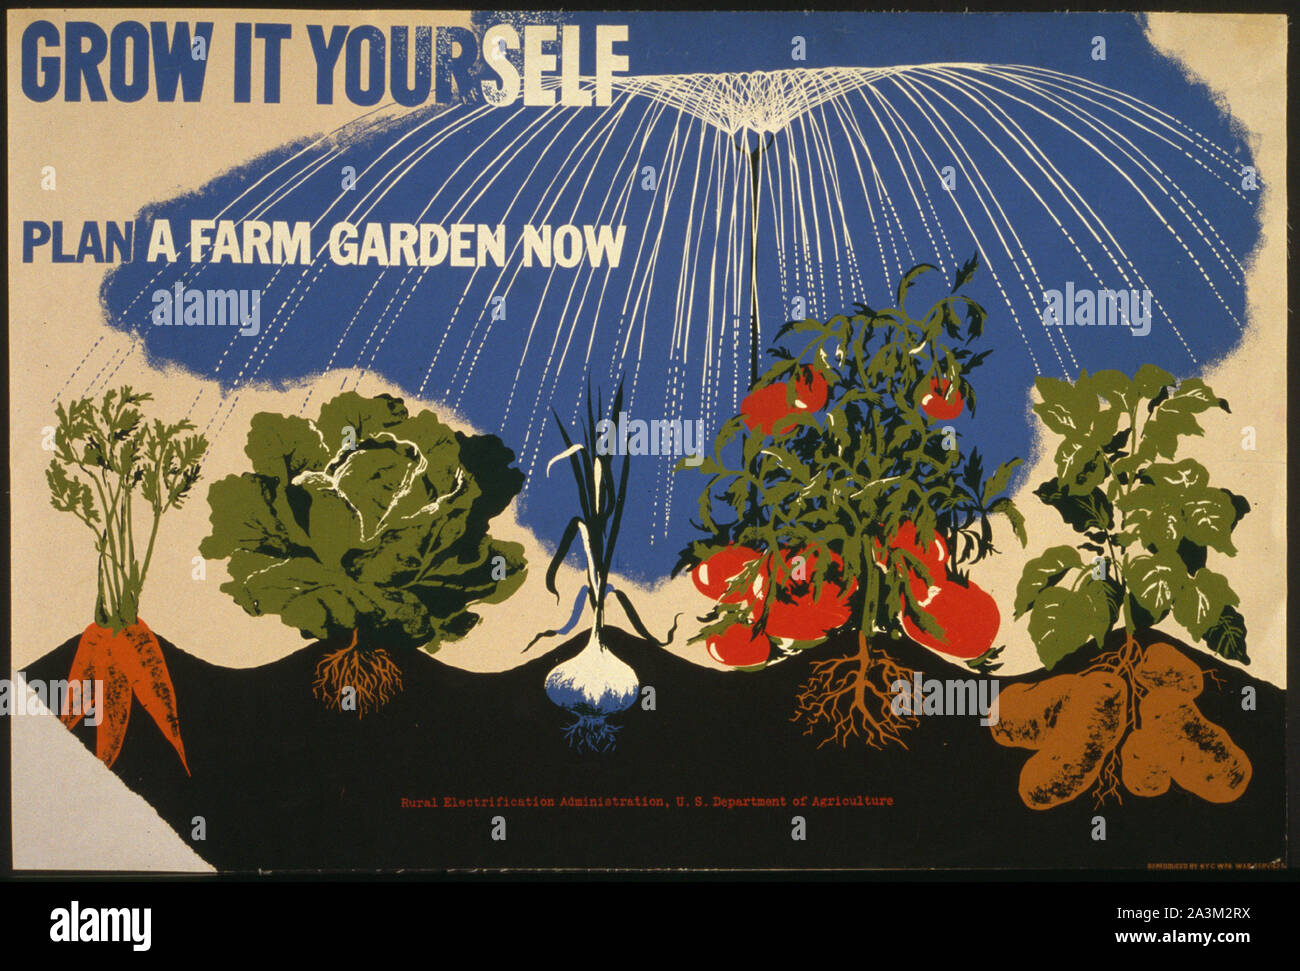 Impianto una fattoria giardino ora - progressi di lavoro Amministrazione - progetto federale di Arte - poster vintage Foto Stock